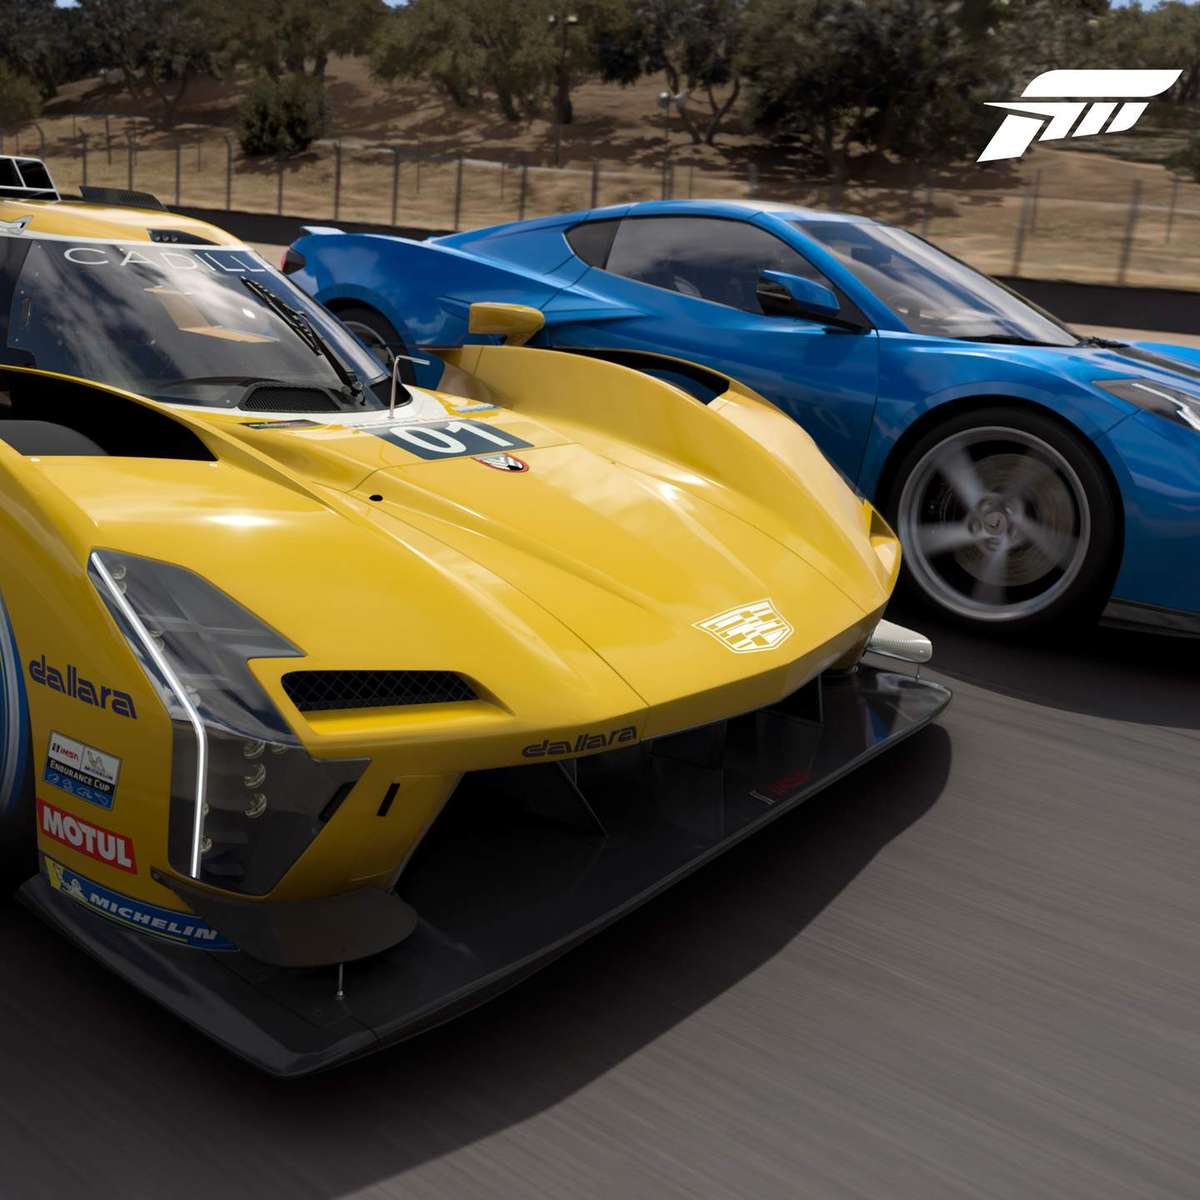 Novo Forza Motorsport chega em outubro e tem pré-venda aberta